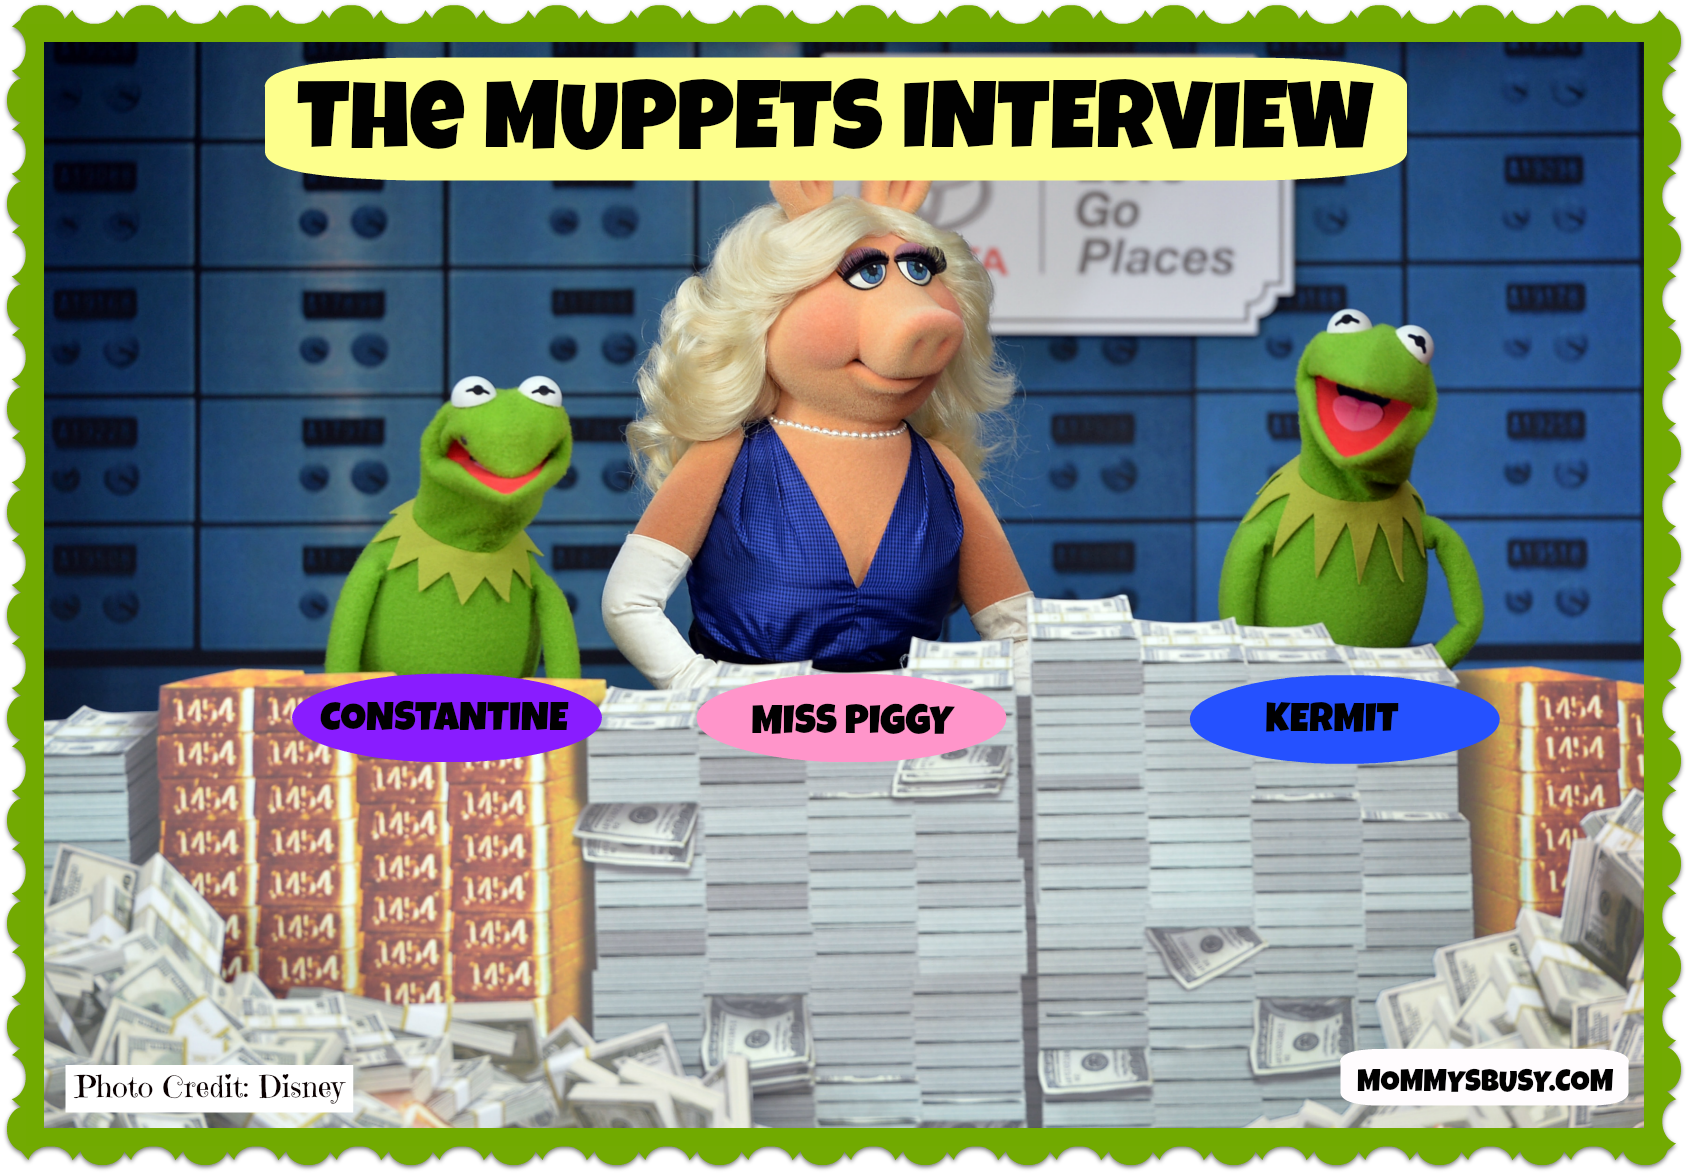 #MuppetsMostWantedEvent